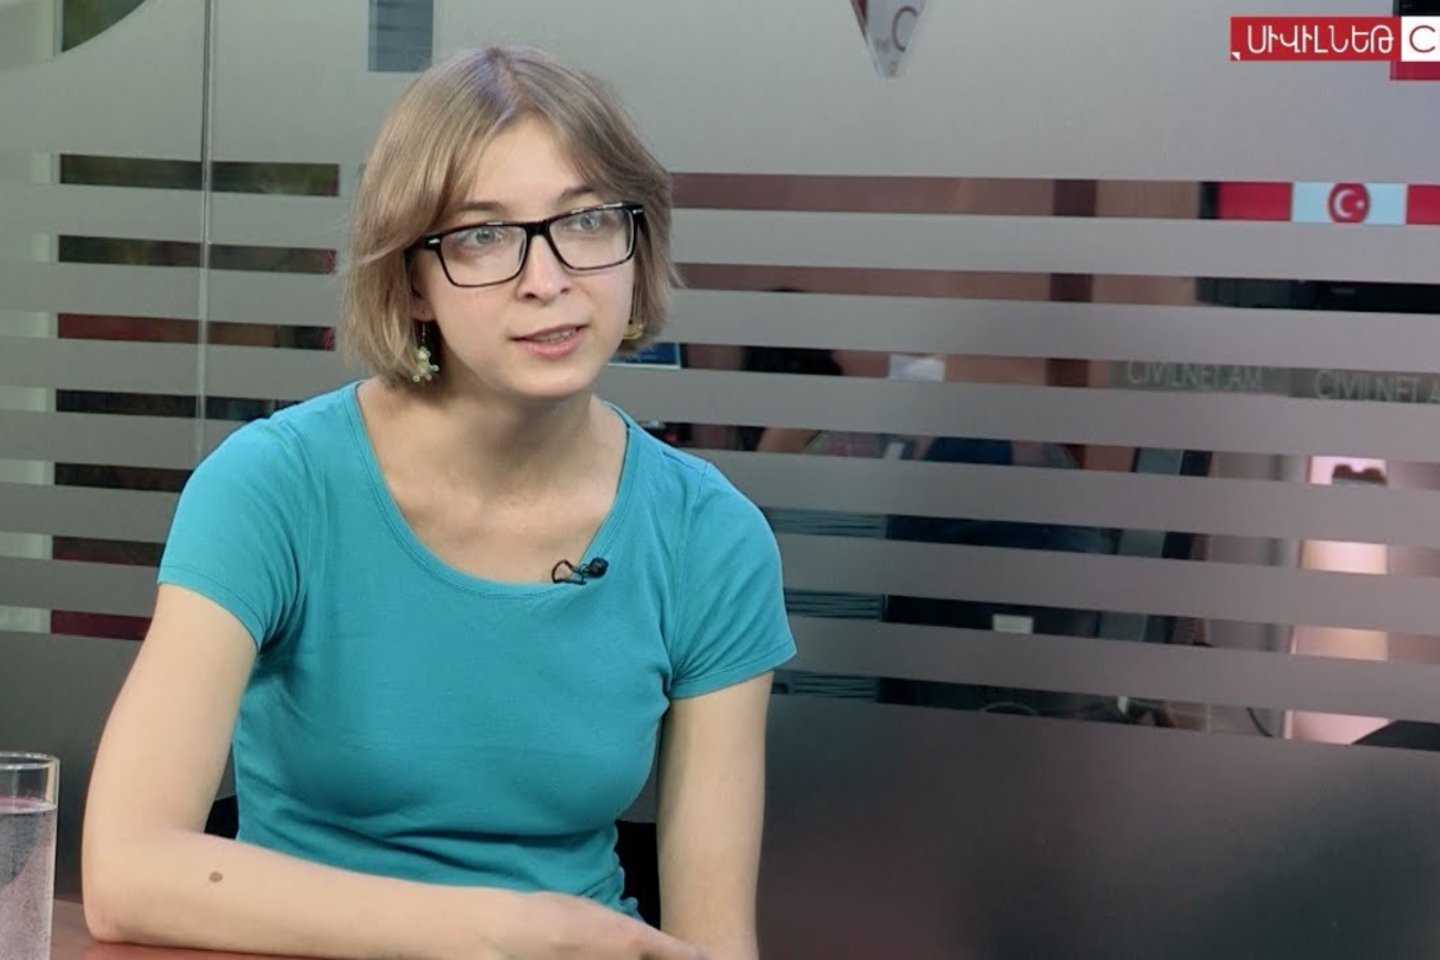  Internete prasidėjo audringa diskusija dėl mokslo žurnalistės Asios Kazancevos kiaušialąstės pardavimo.<br> youtube nuotr.